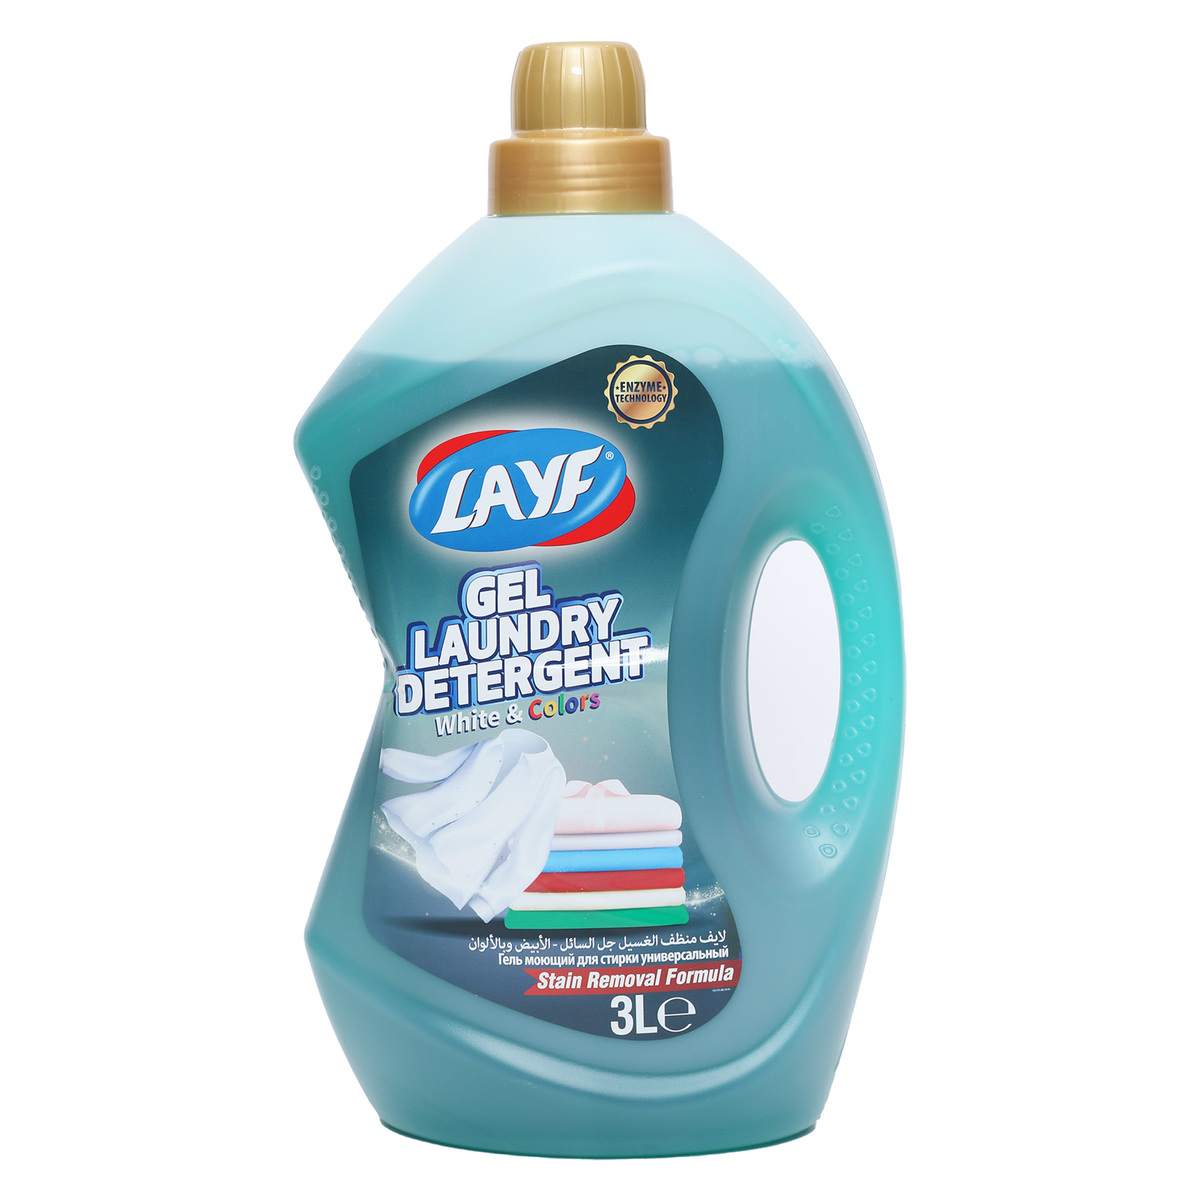 اشتري قم بشراء Layf Laundry Detergent Gel White & Colors 3 Litres Online at Best Price من الموقع - من لولو هايبر ماركت Liquid Detergent في الامارات